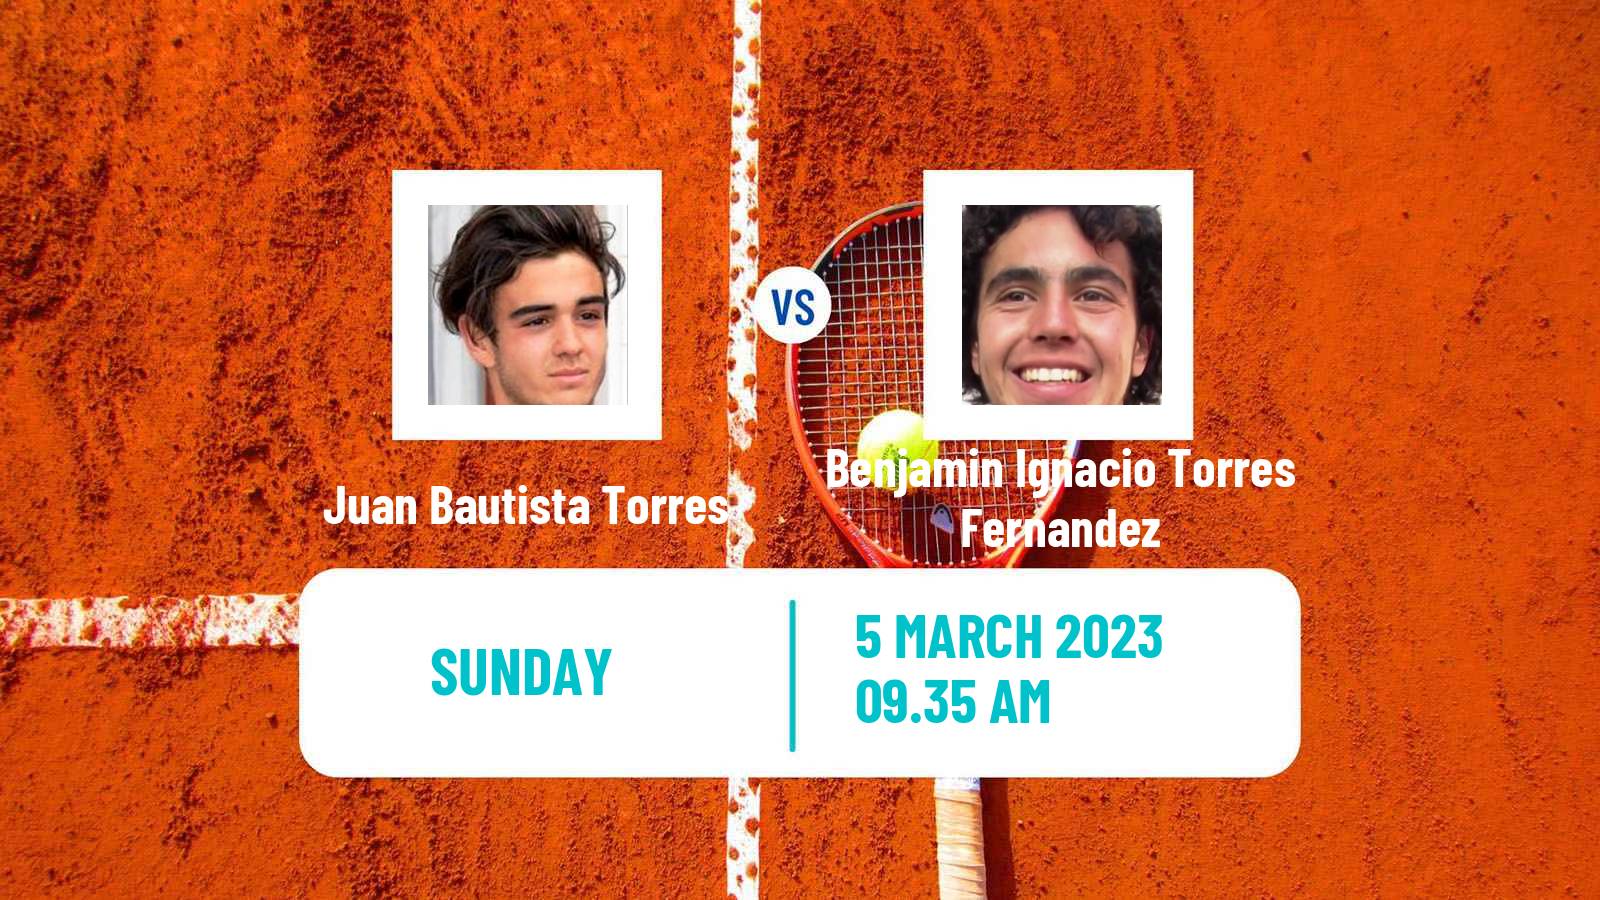 Tennis ATP Challenger Juan Bautista Torres - Benjamin Ignacio Torres Fernandez